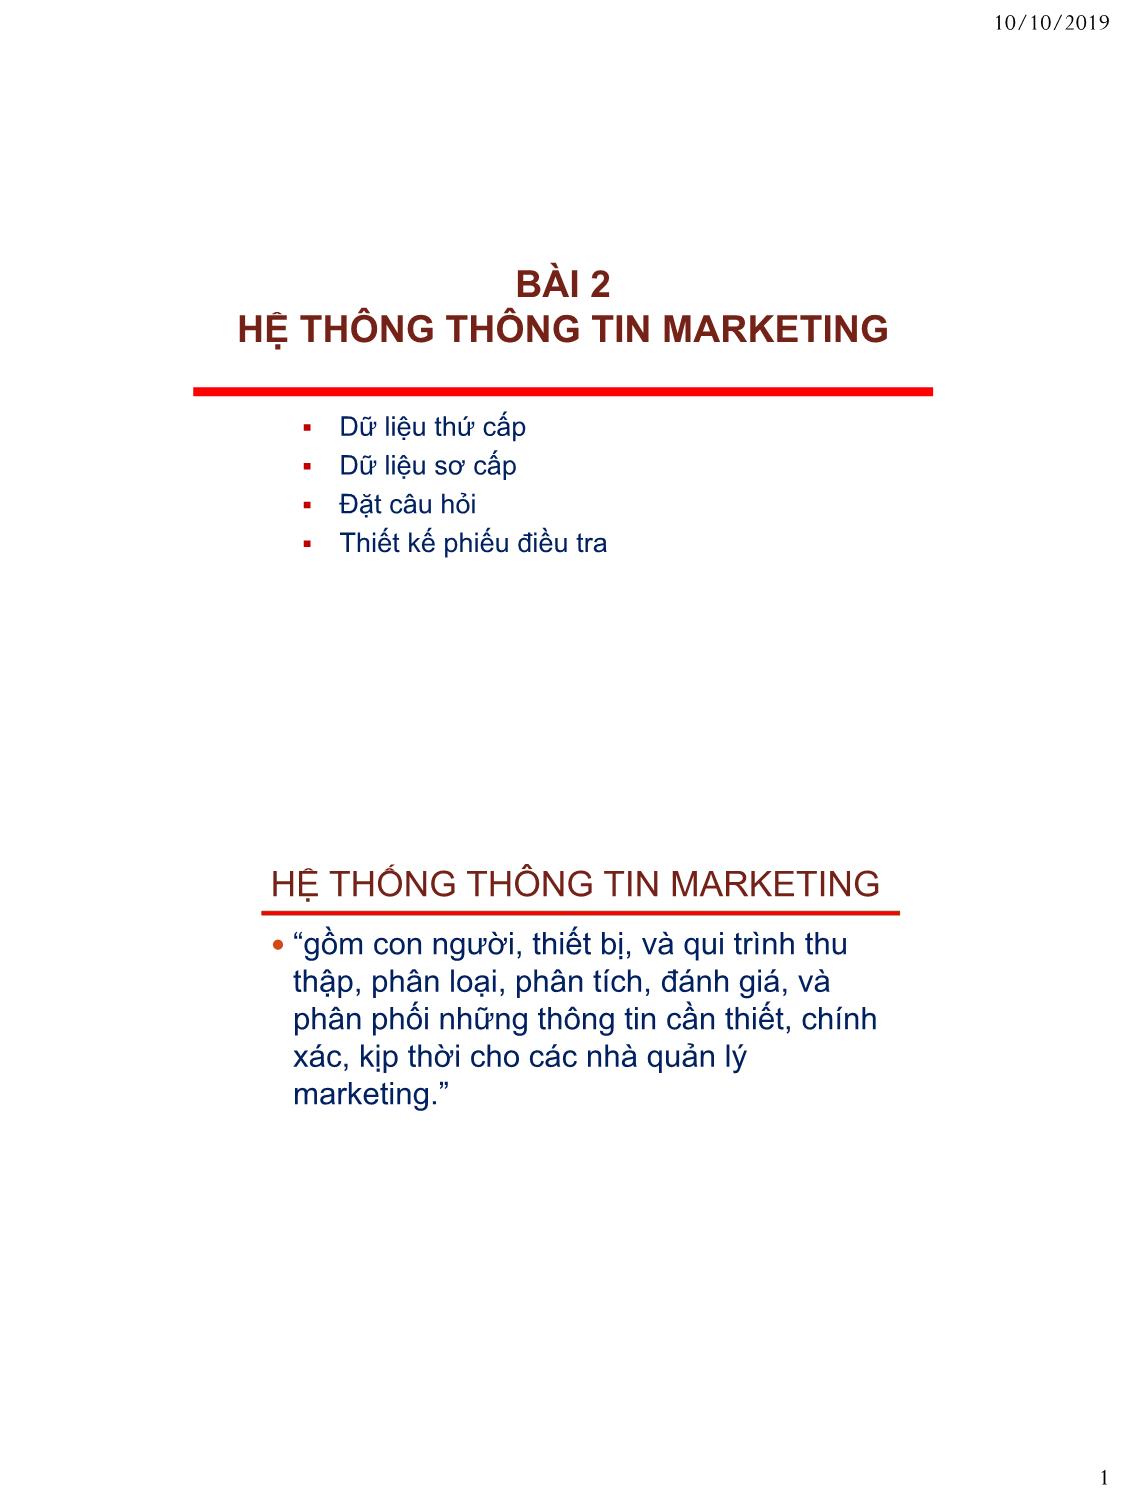 Bài giảng Nguyên lý marketing - Bài 2: Hệ thông thông tin marketing - Nguyễn Thị Mai An trang 1